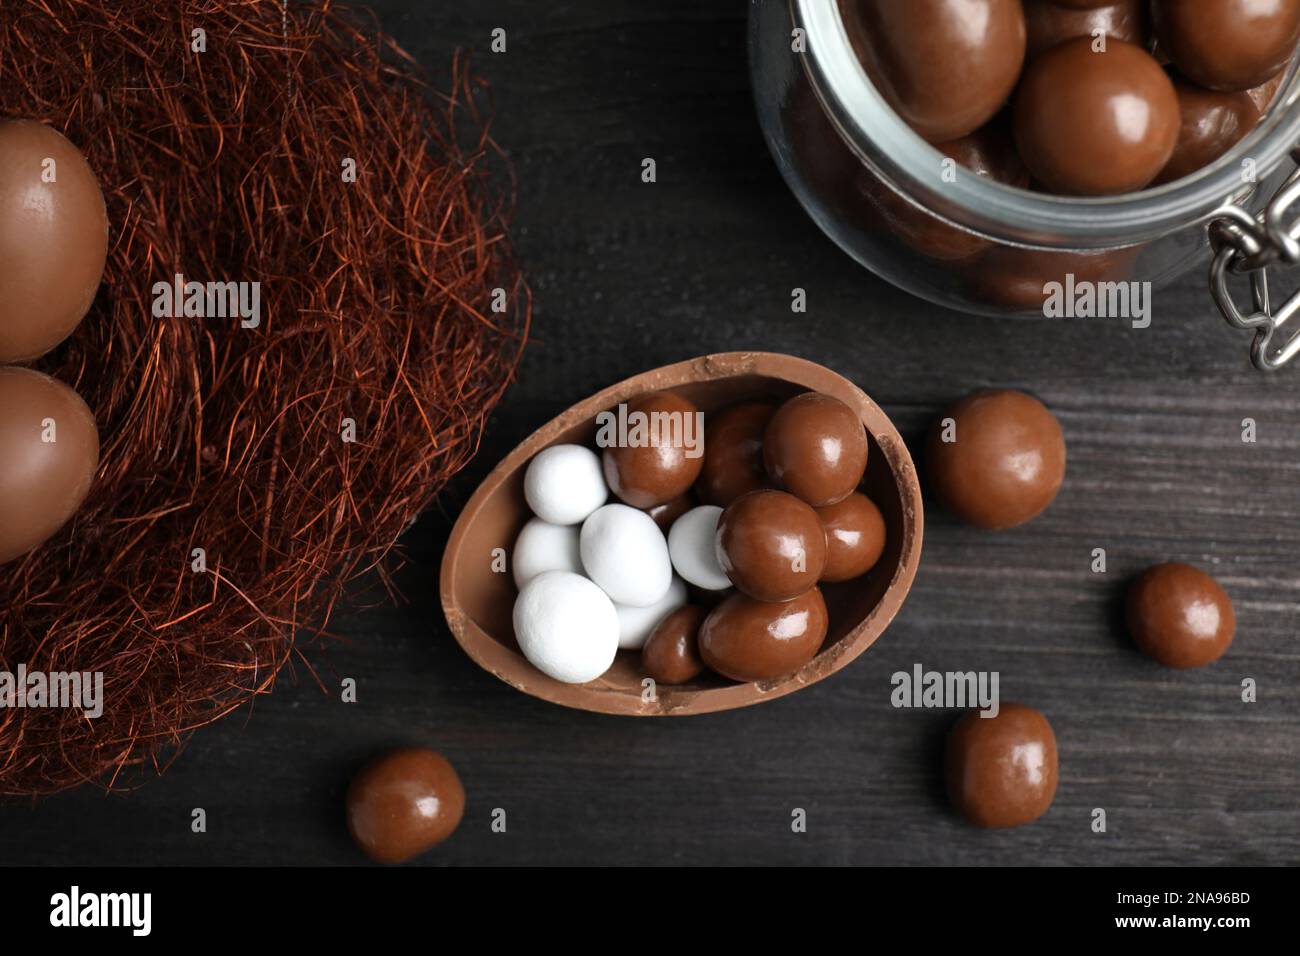 La mitad de sabroso huevo de chocolate, nido decorativo y dulces en la mesa de madera negra, tendido plano Foto de stock